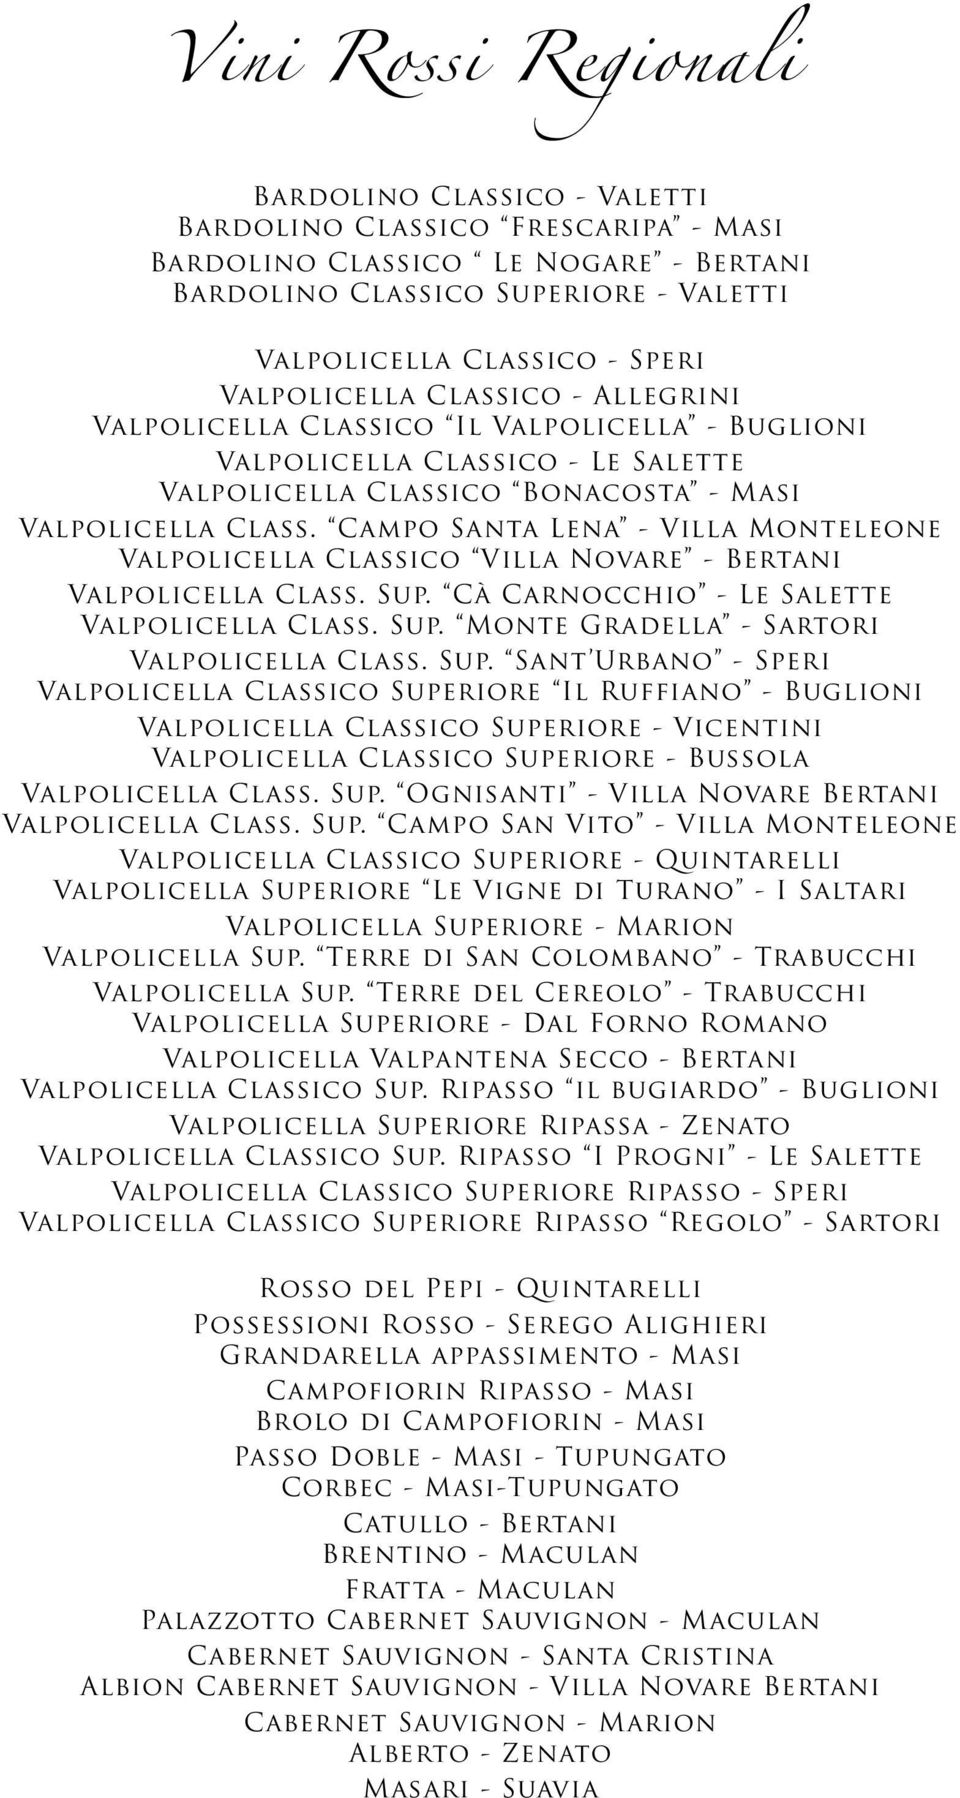 Campo Santa Lena - Villa Monteleone Valpolicella Classico Villa Novare - Bertani Valpolicella Class. Sup. Cà Carnocchio - Le Salette Valpolicella Class. Sup. Monte Gradella - Sartori Valpolicella Class.